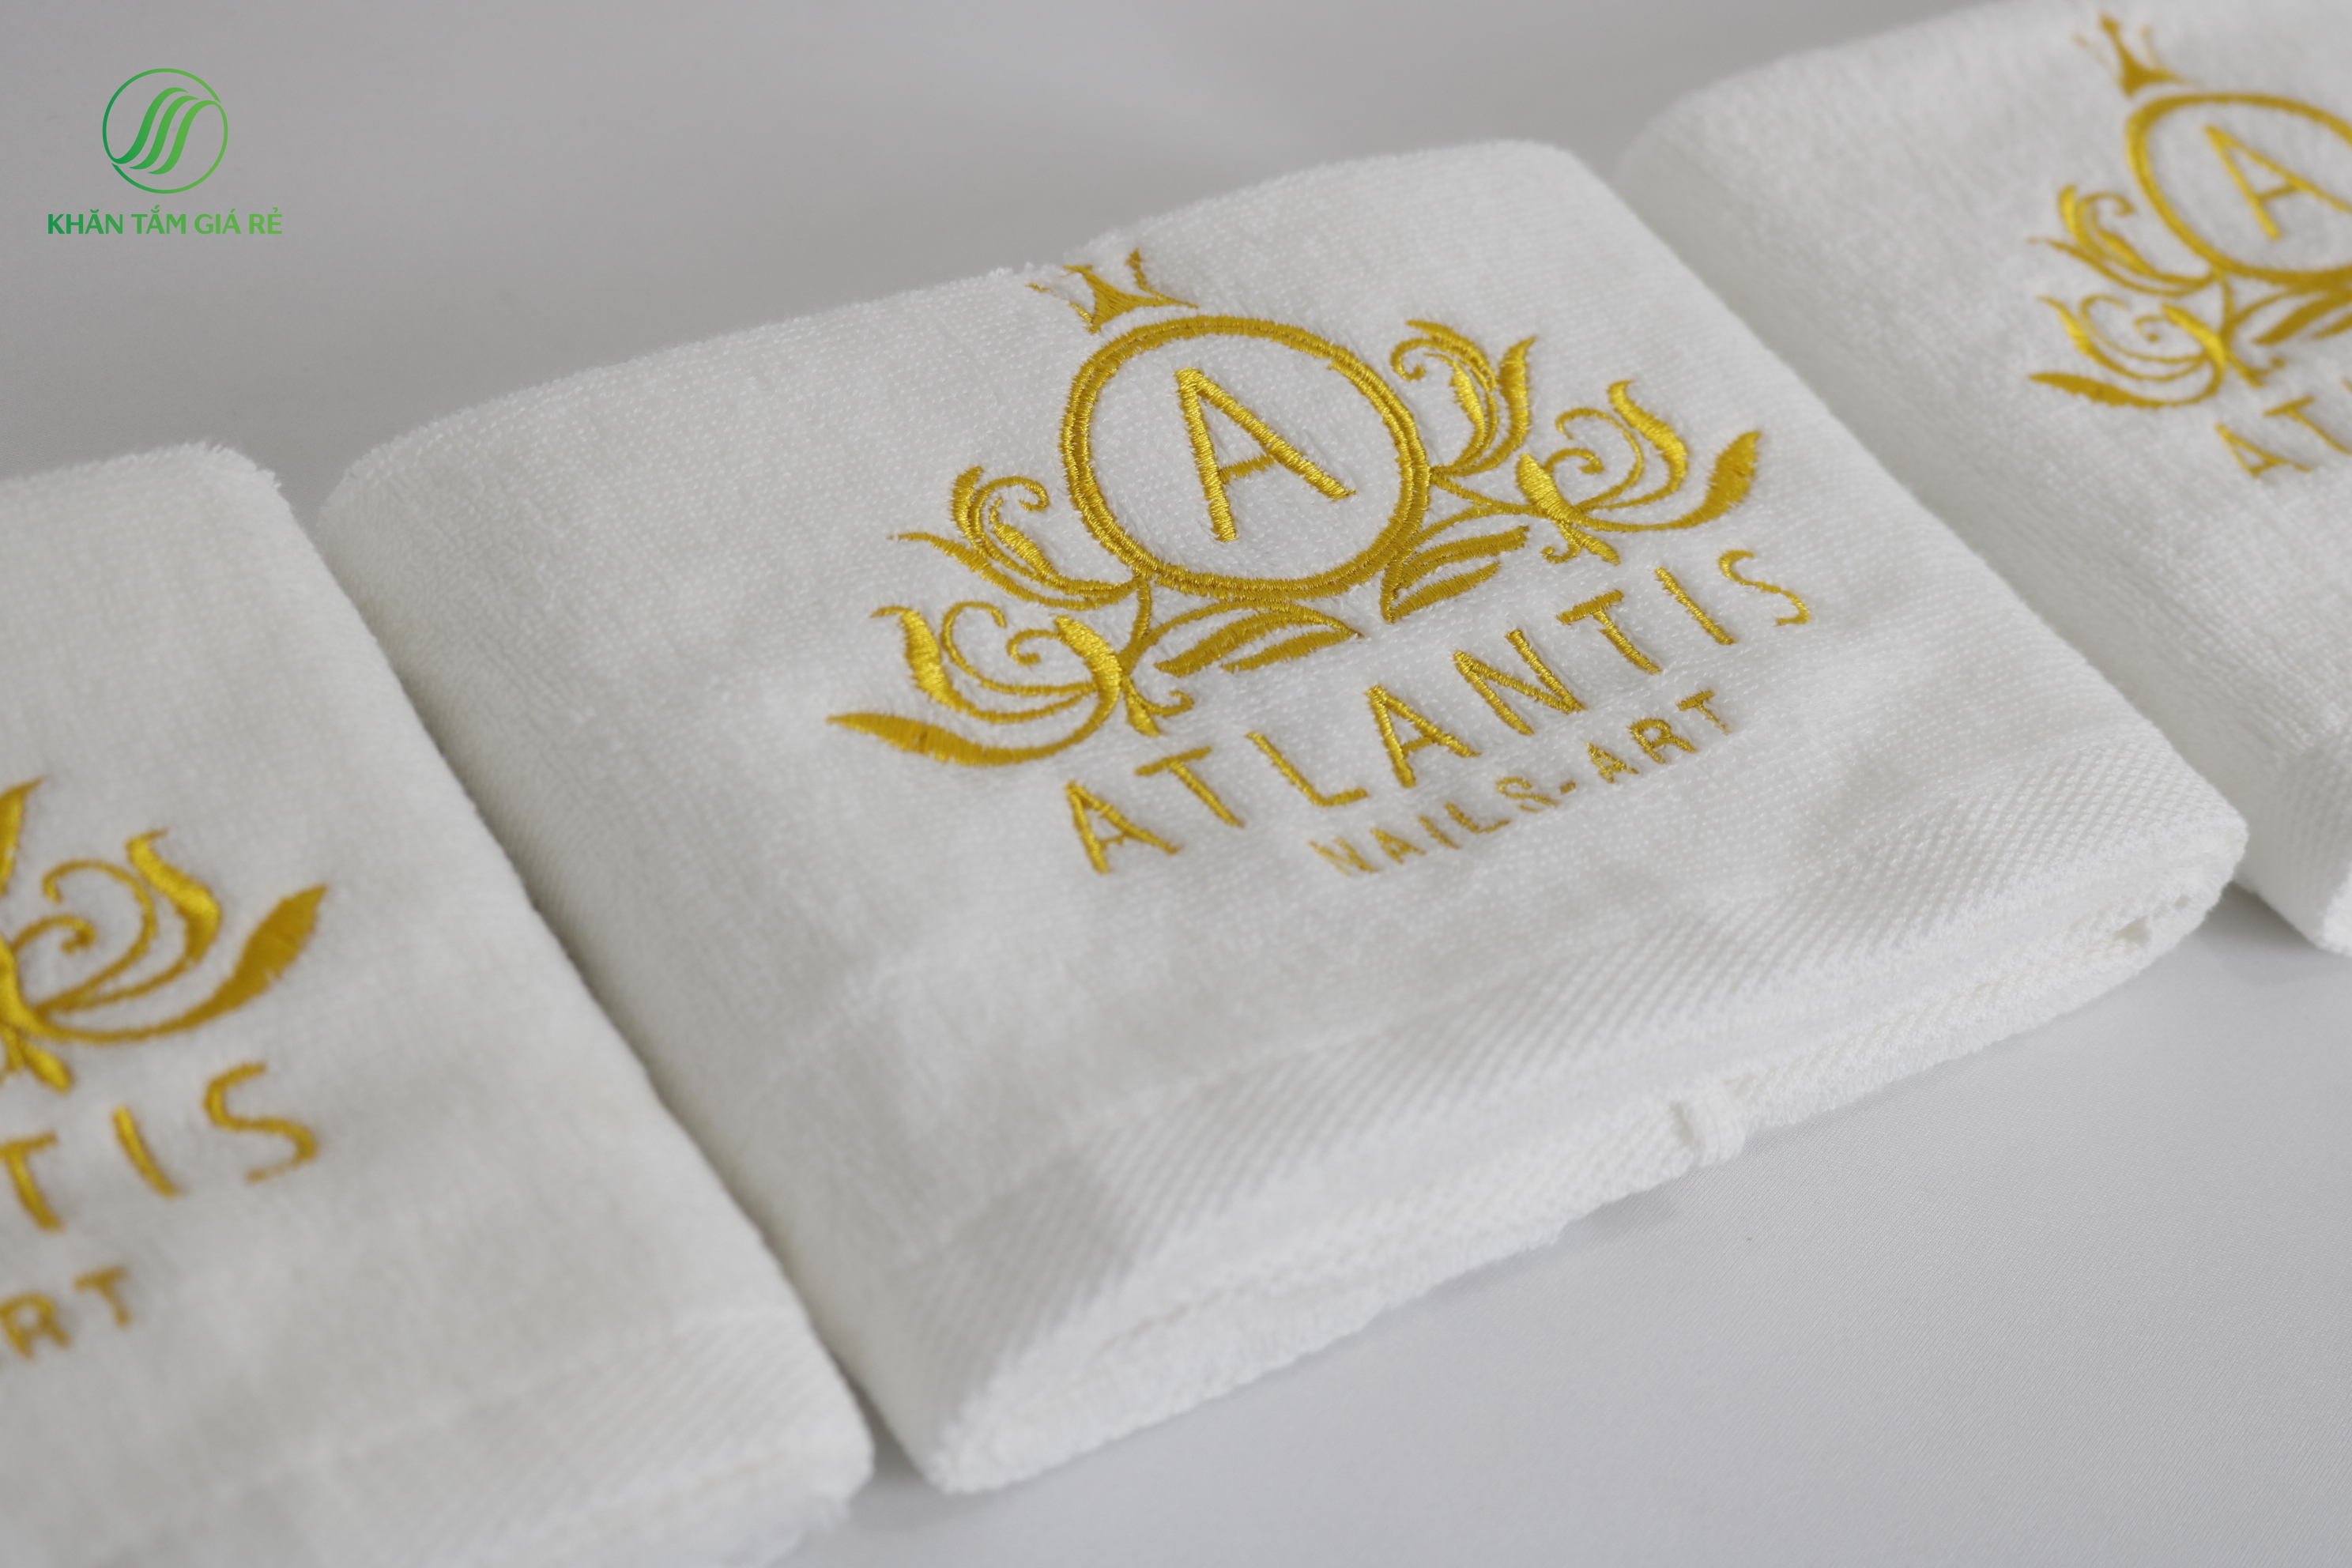 Chọn đặt may in khăn có logo thể hiện sự chuyên nghiệp và sự quan tâm đến chi tiết của doanh nghiệp